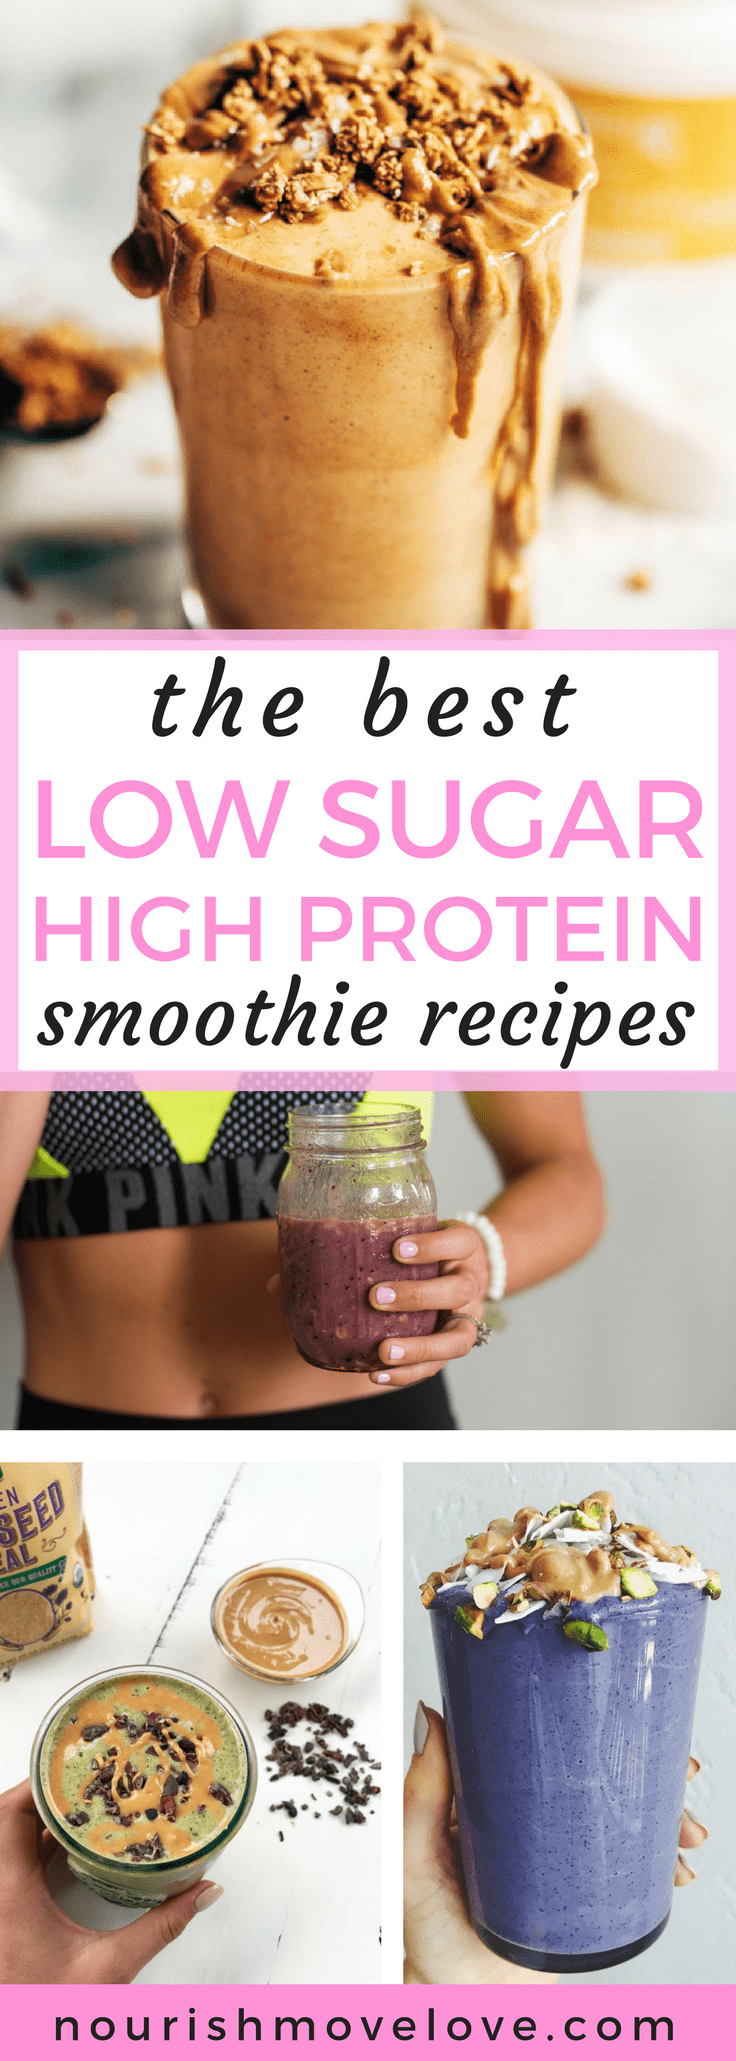 15 Healthy, Low Sugar Smoothie Recipes | Nourish Move Love -   17 healthy recipes Smoothies sugar ideas